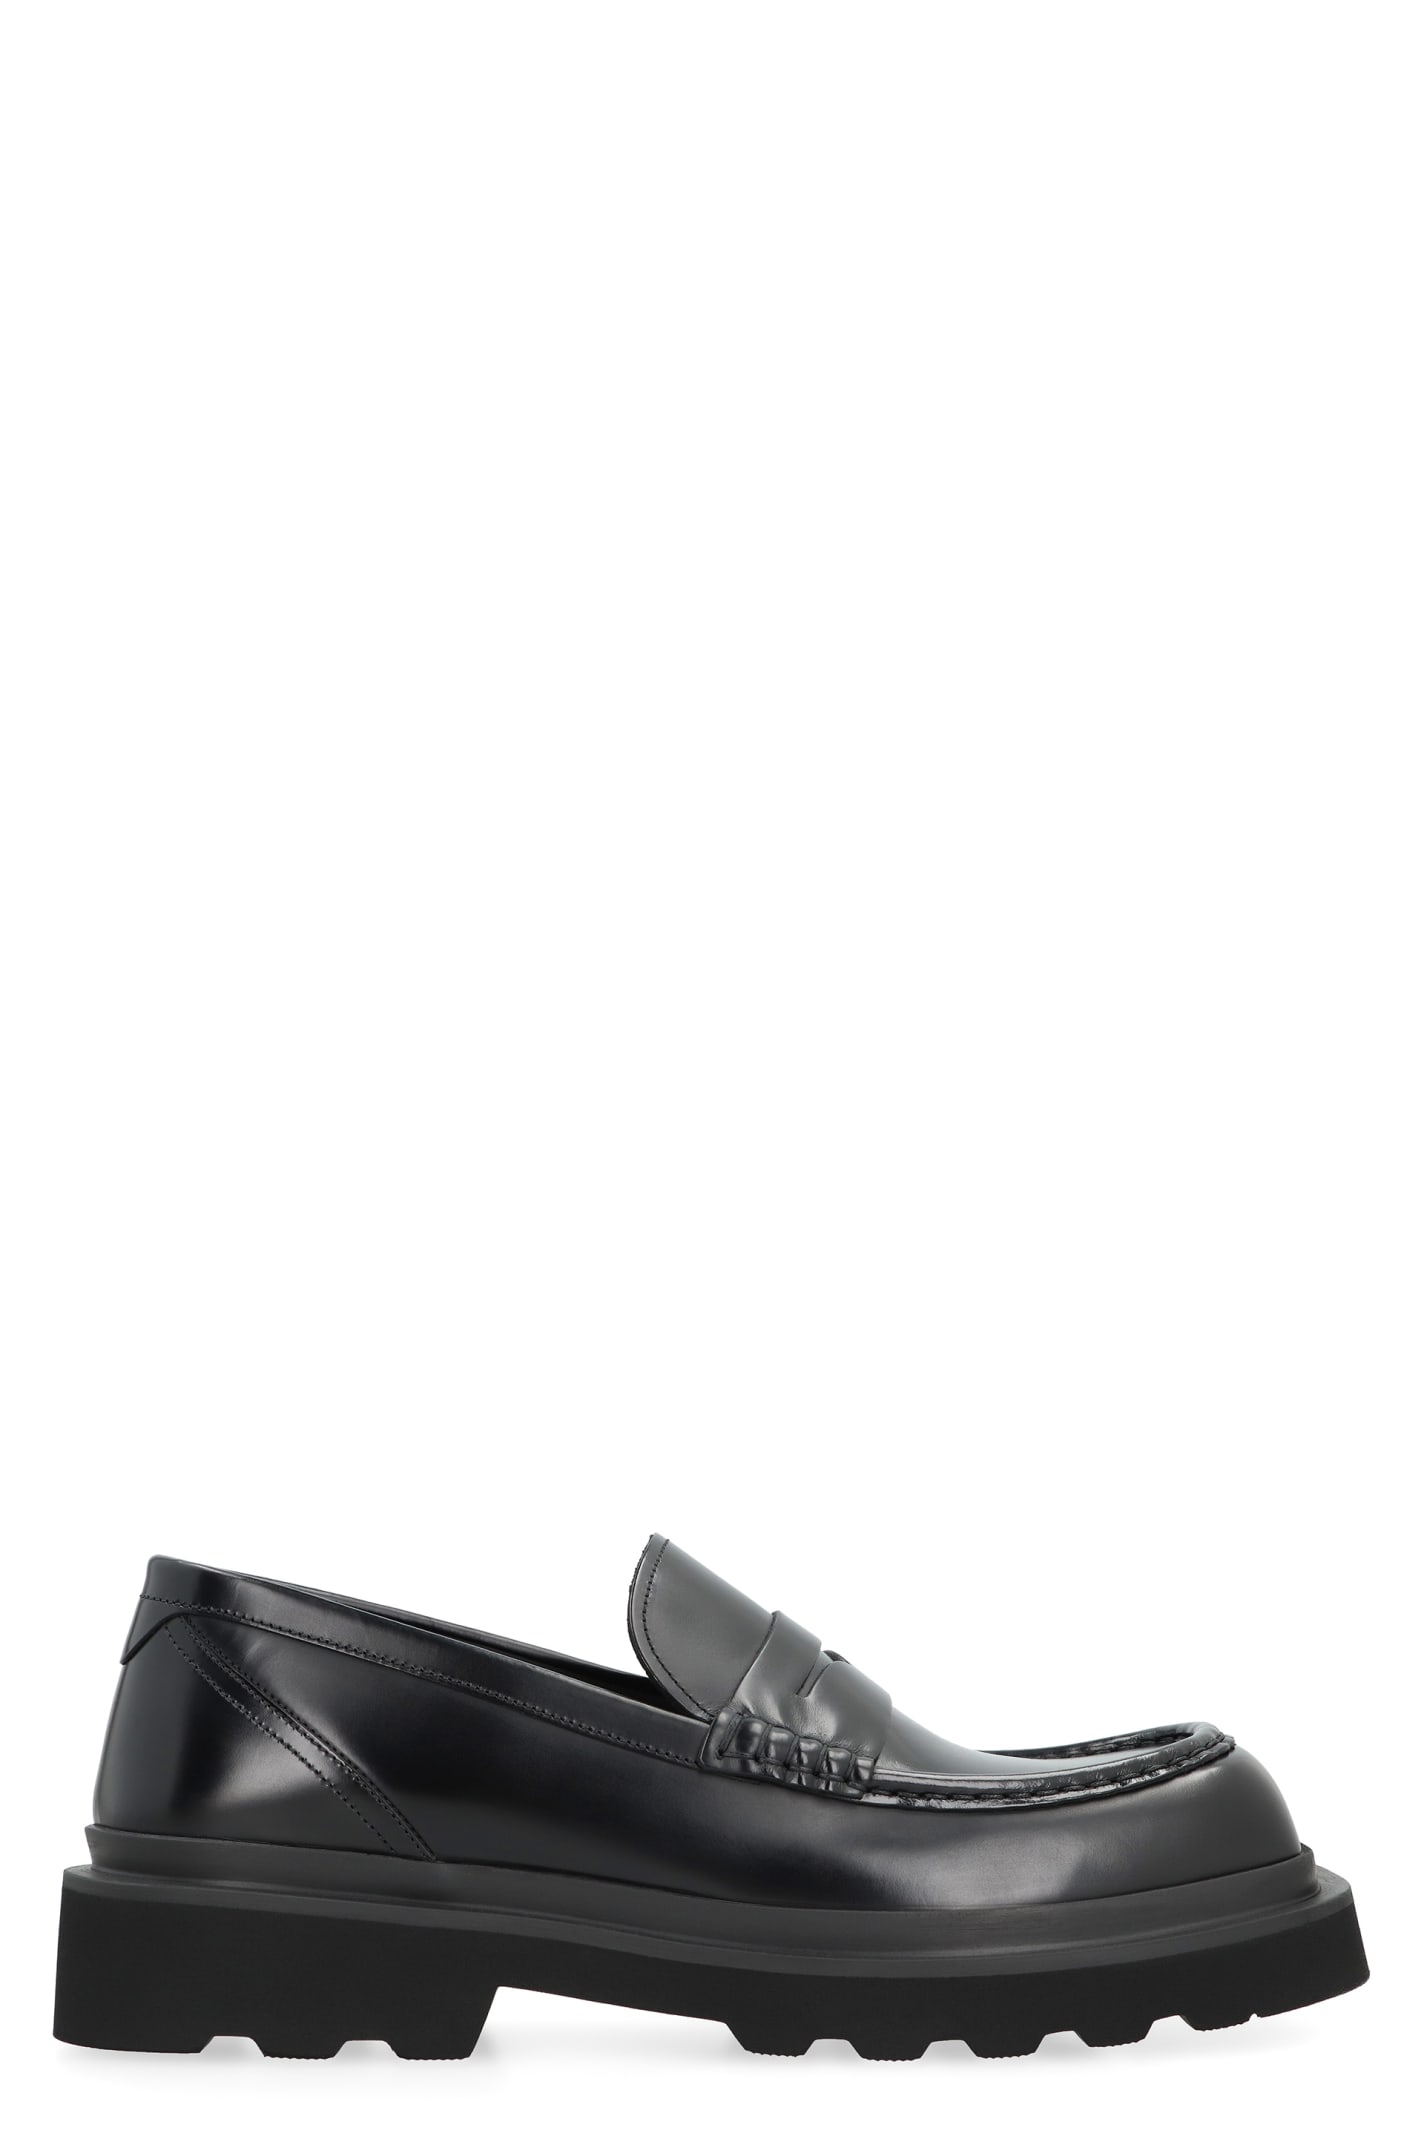 Dolce & Gabbana Calfskin Loafers In Black